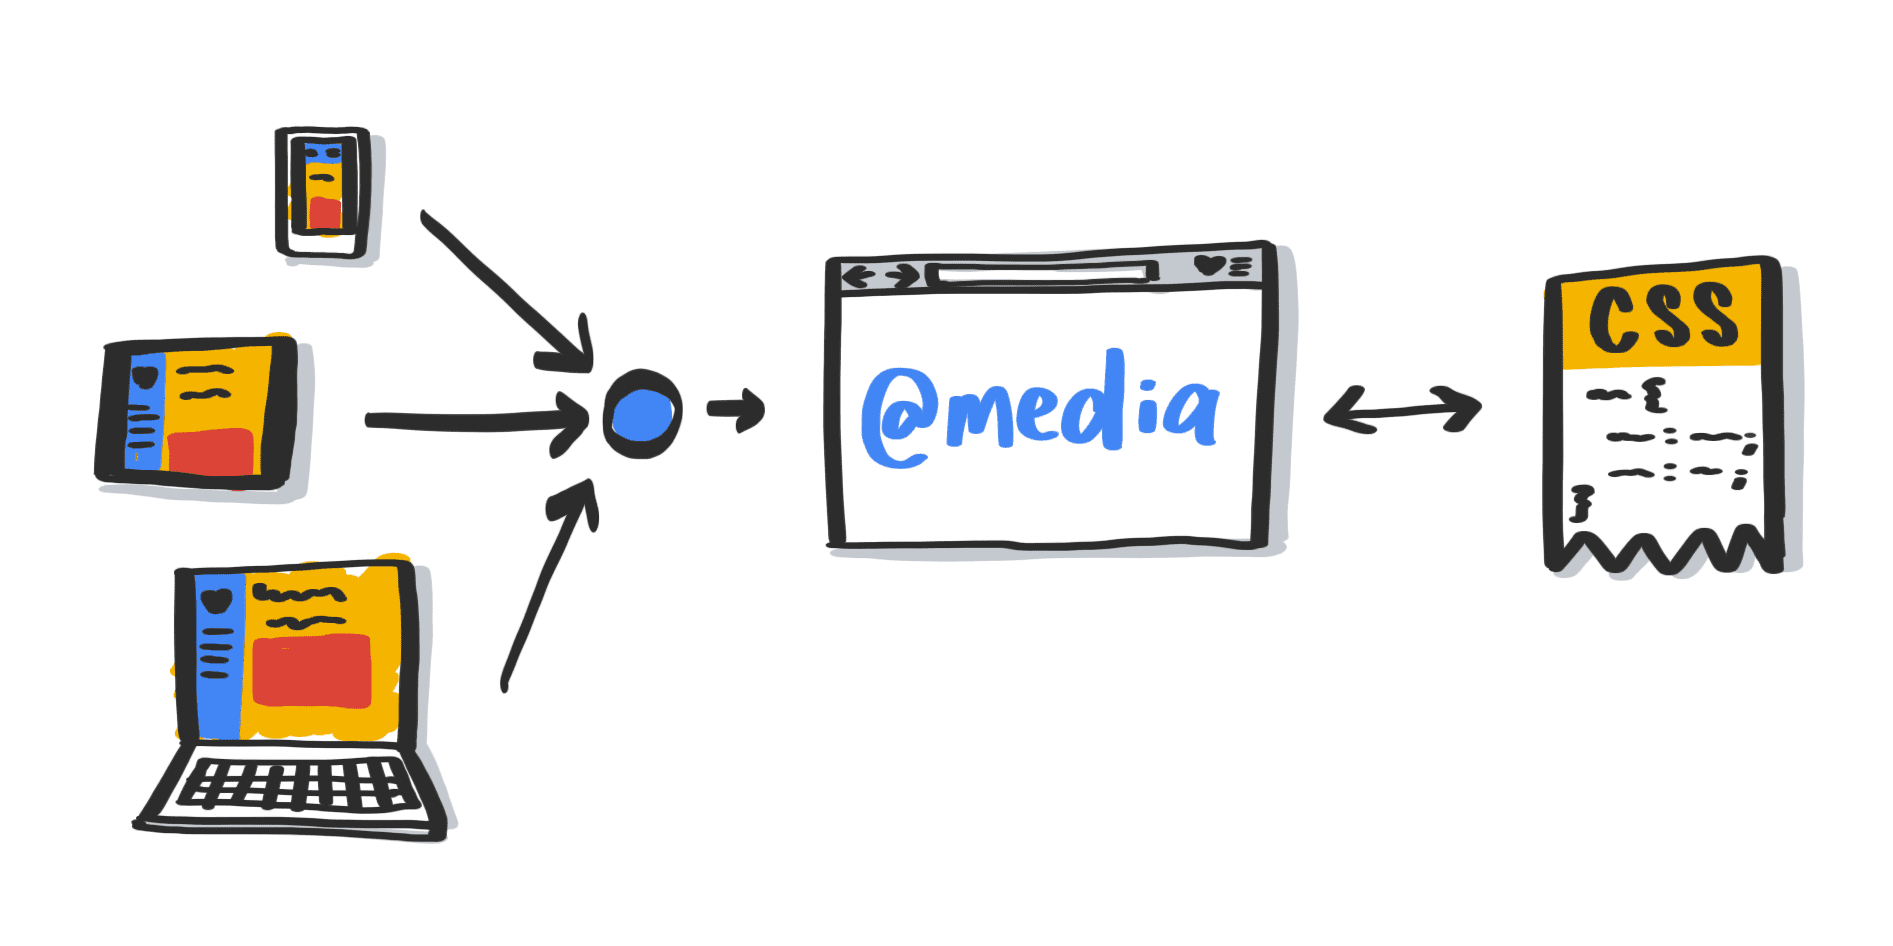 सिस्टम-लेवल पर उपयोगकर्ता की प्राथमिकताओं की जानकारी देने वाली मीडिया क्वेरी दिखाने वाला डायग्राम.